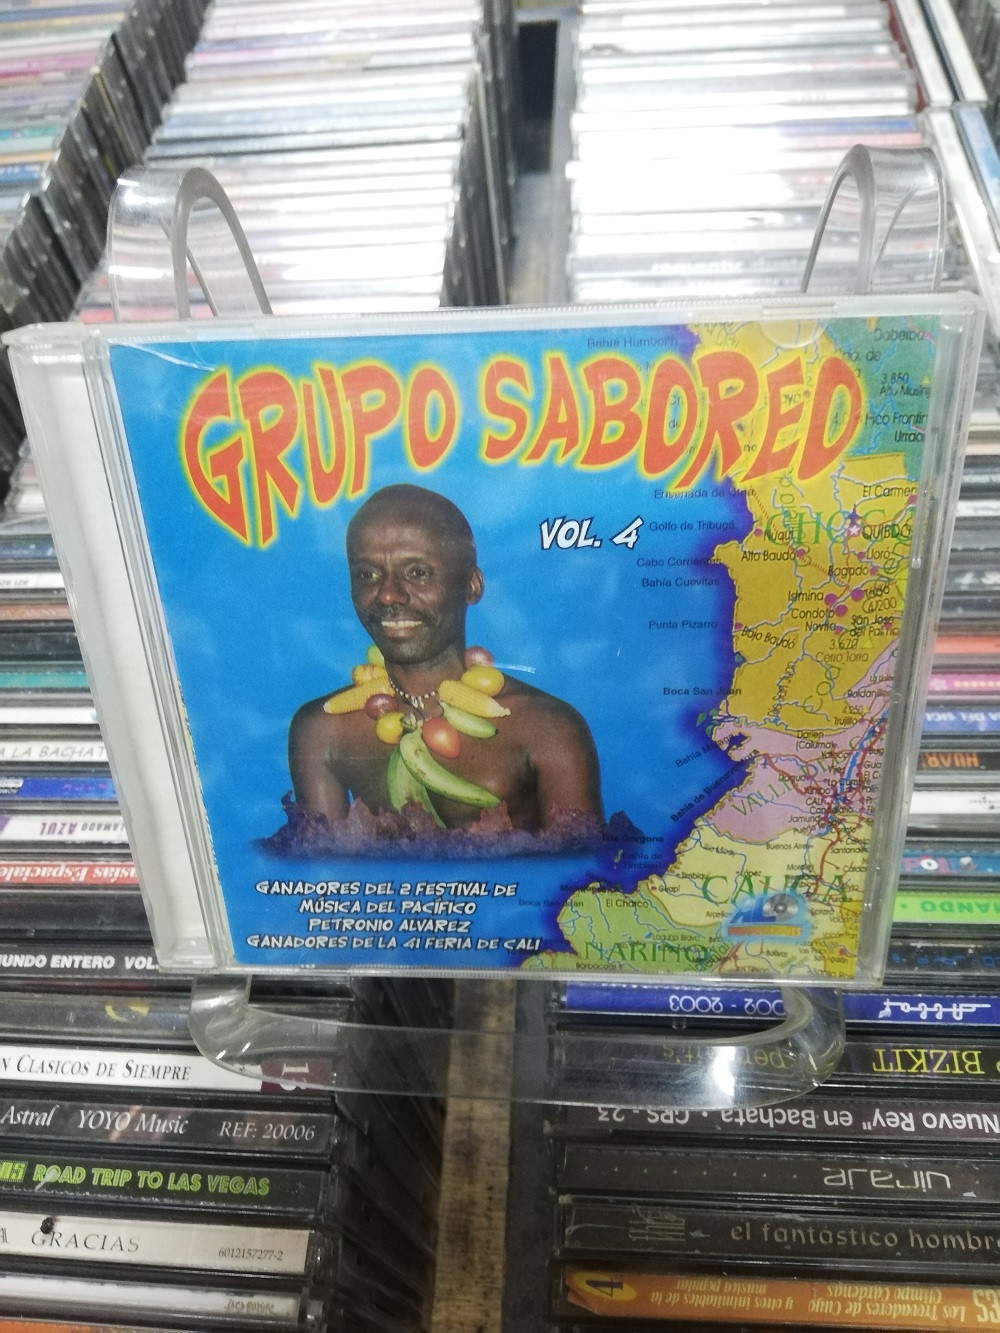 Imagen CD GRUPO SABOREO VOL. 4 1